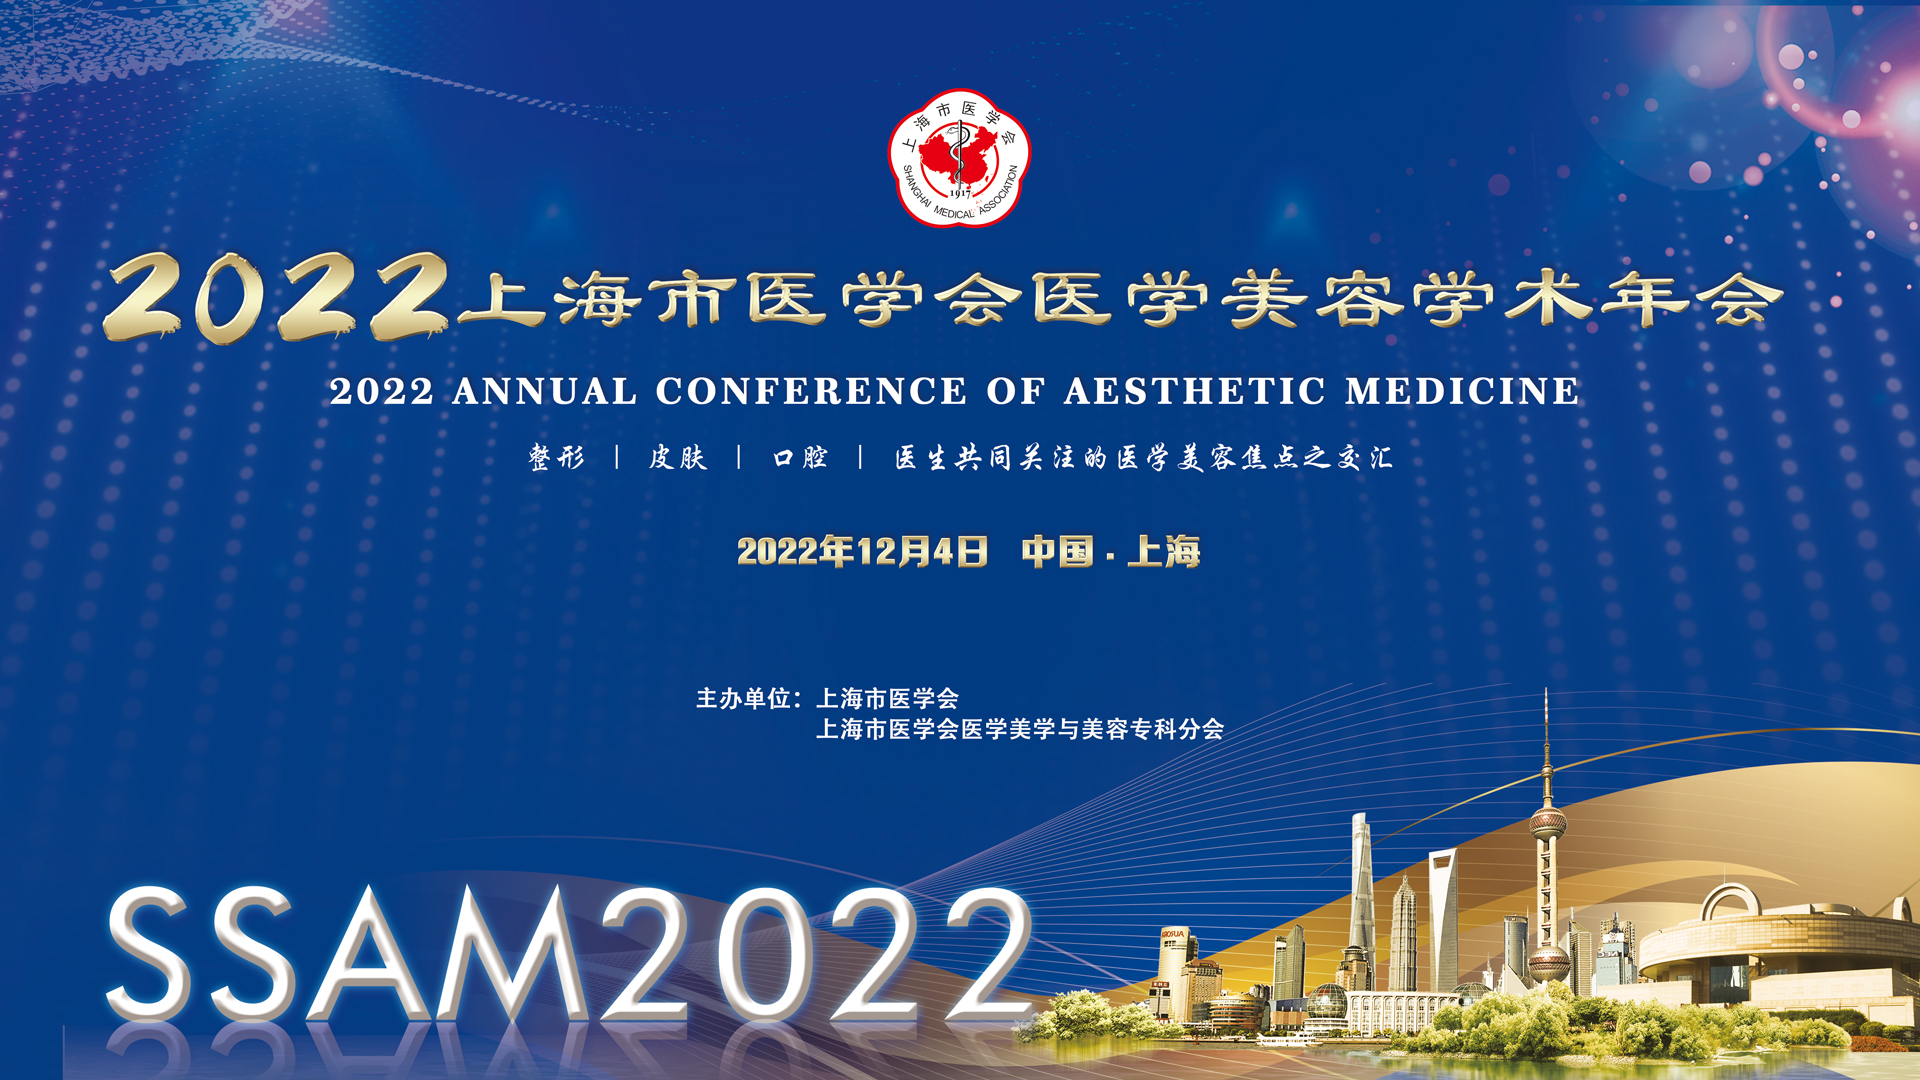 2022年上海市医学会医学美学与美容学术年会